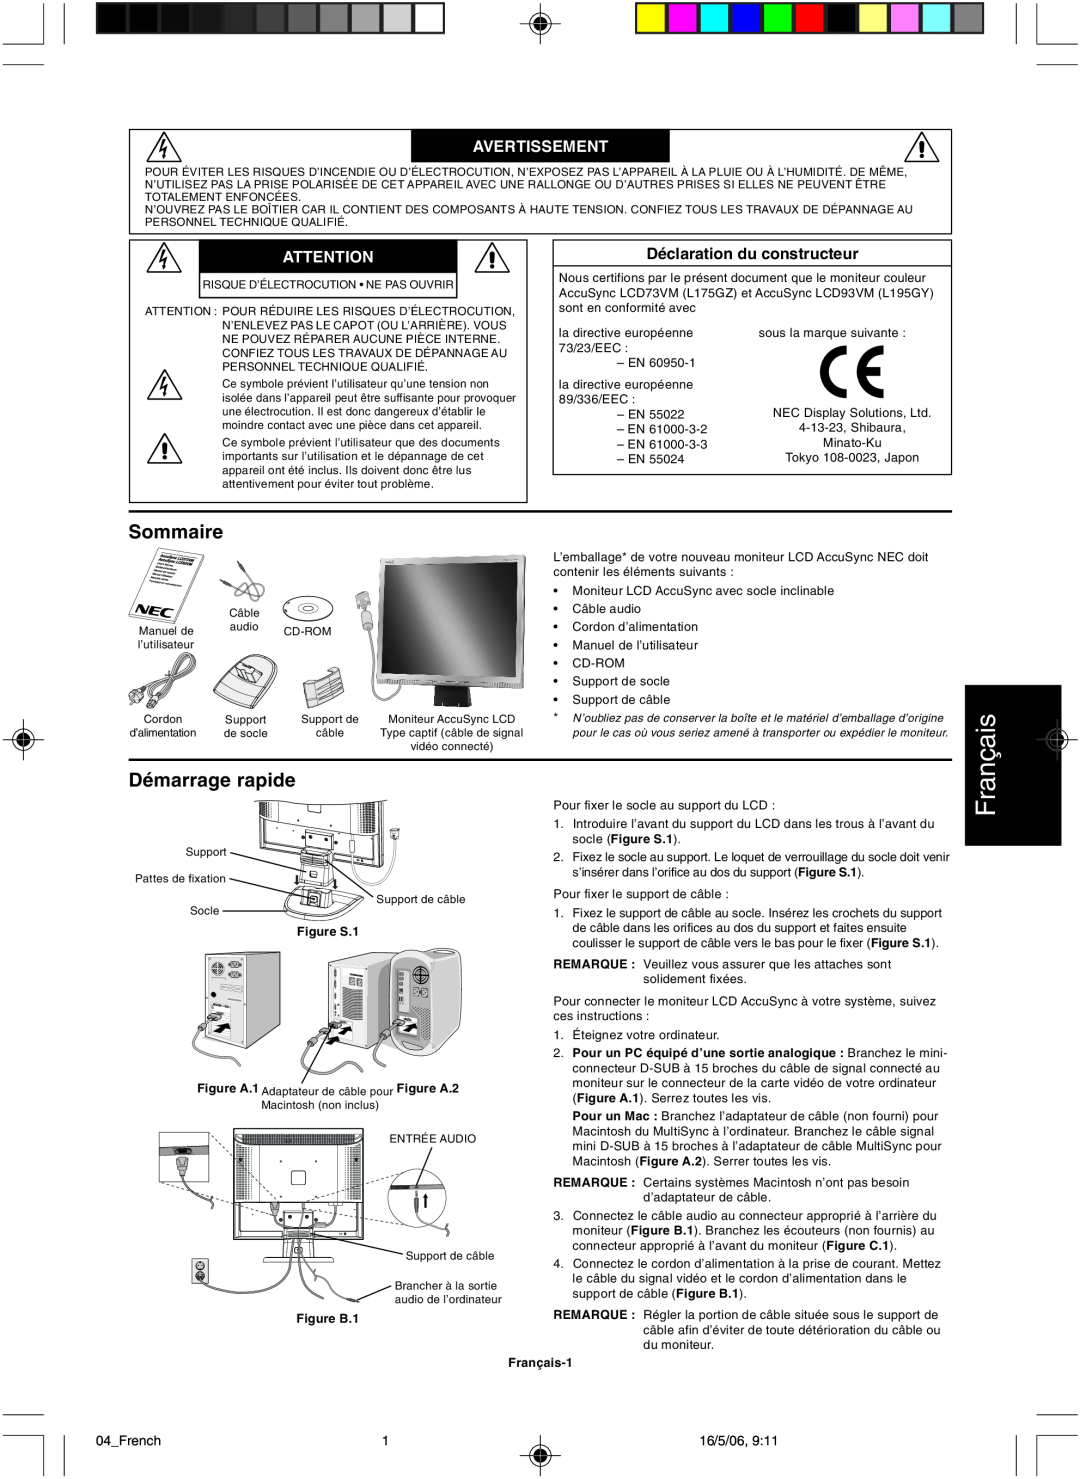 NEC LCD73VM user manual çais, Sommaire, Démarrage rapide, Fran, Avertissement 